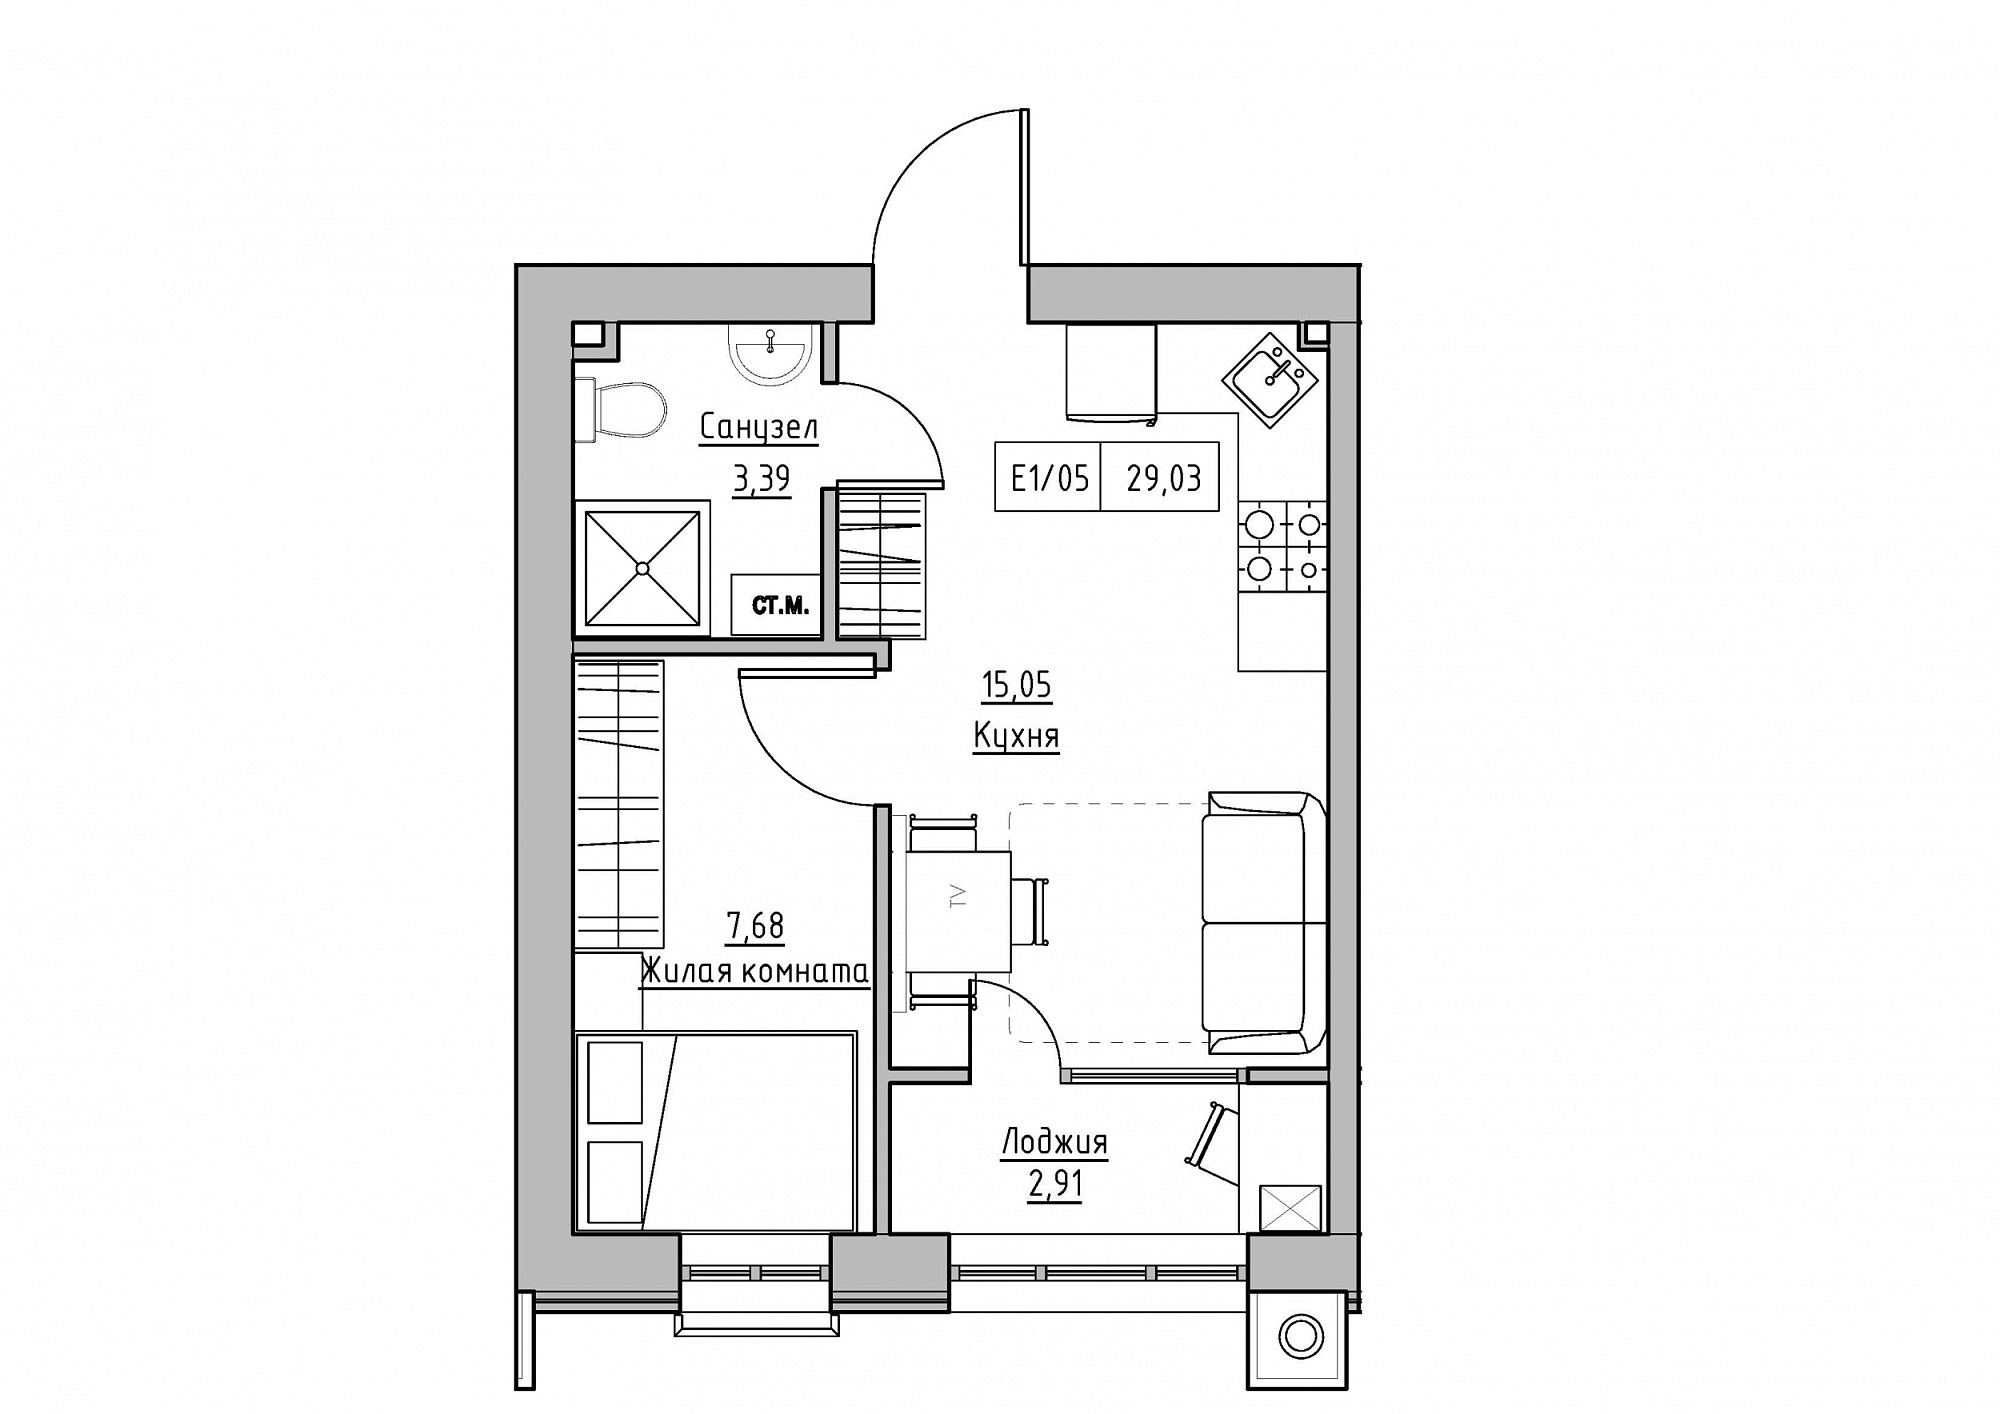 Планировка 1-к квартира площей 29.03м2, KS-012-04/0007.